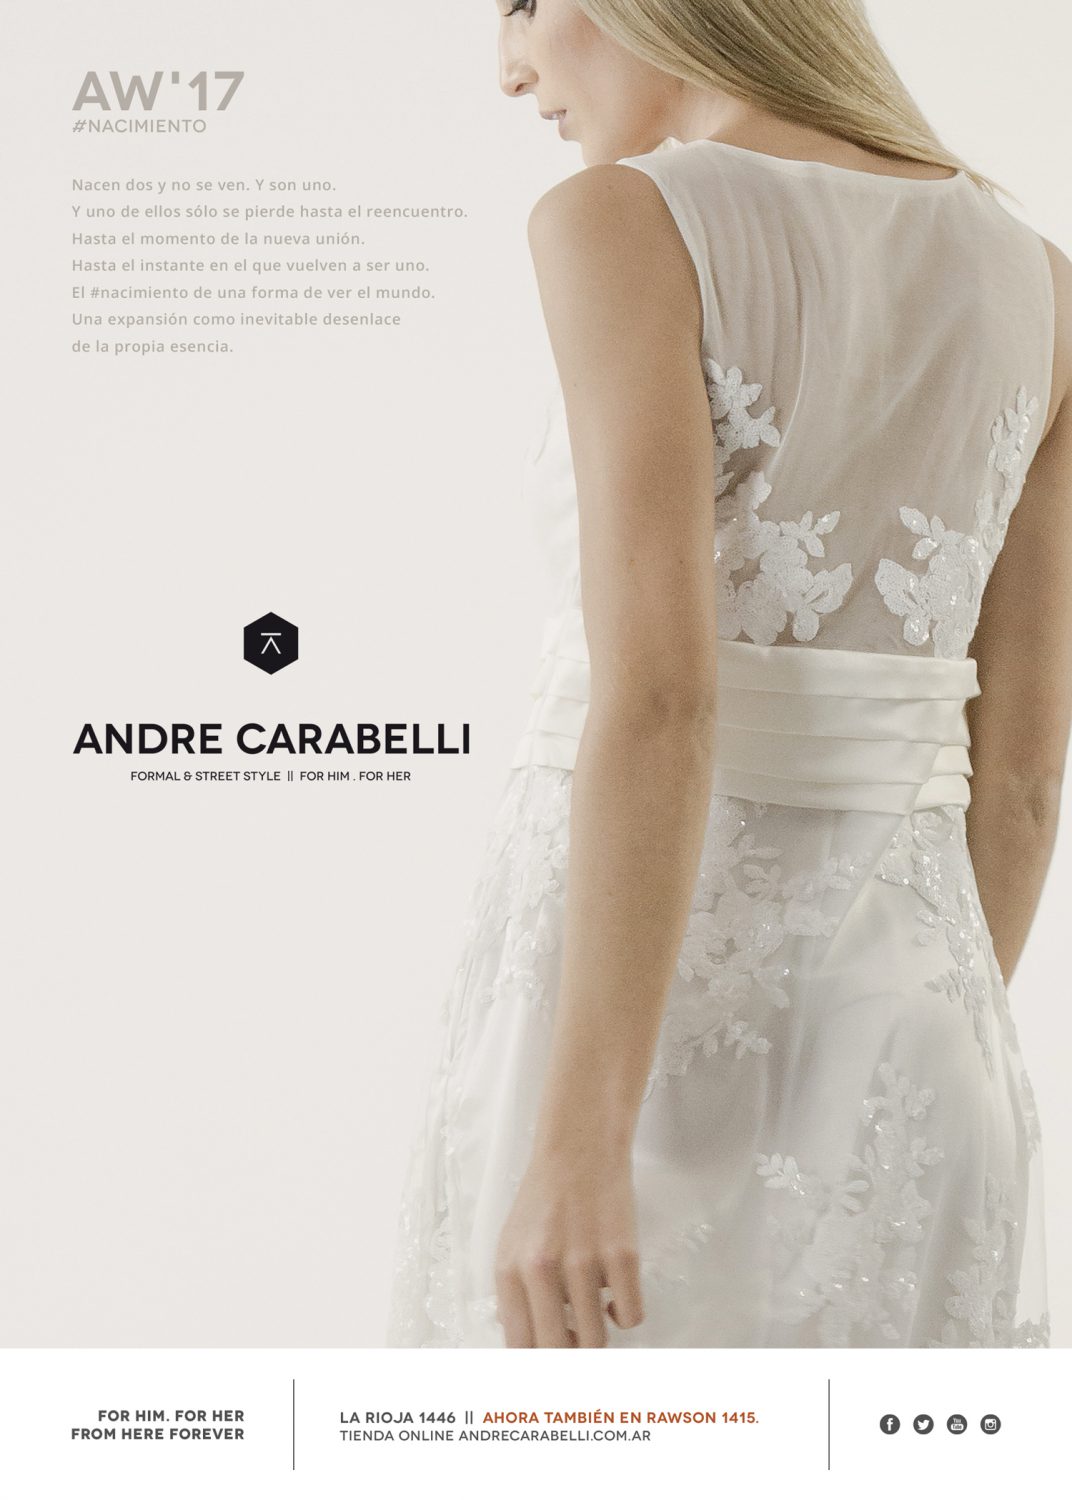 Diseño gráfico y producción material gráfico publicitario para Andre Carabelli by UMM ideas SA